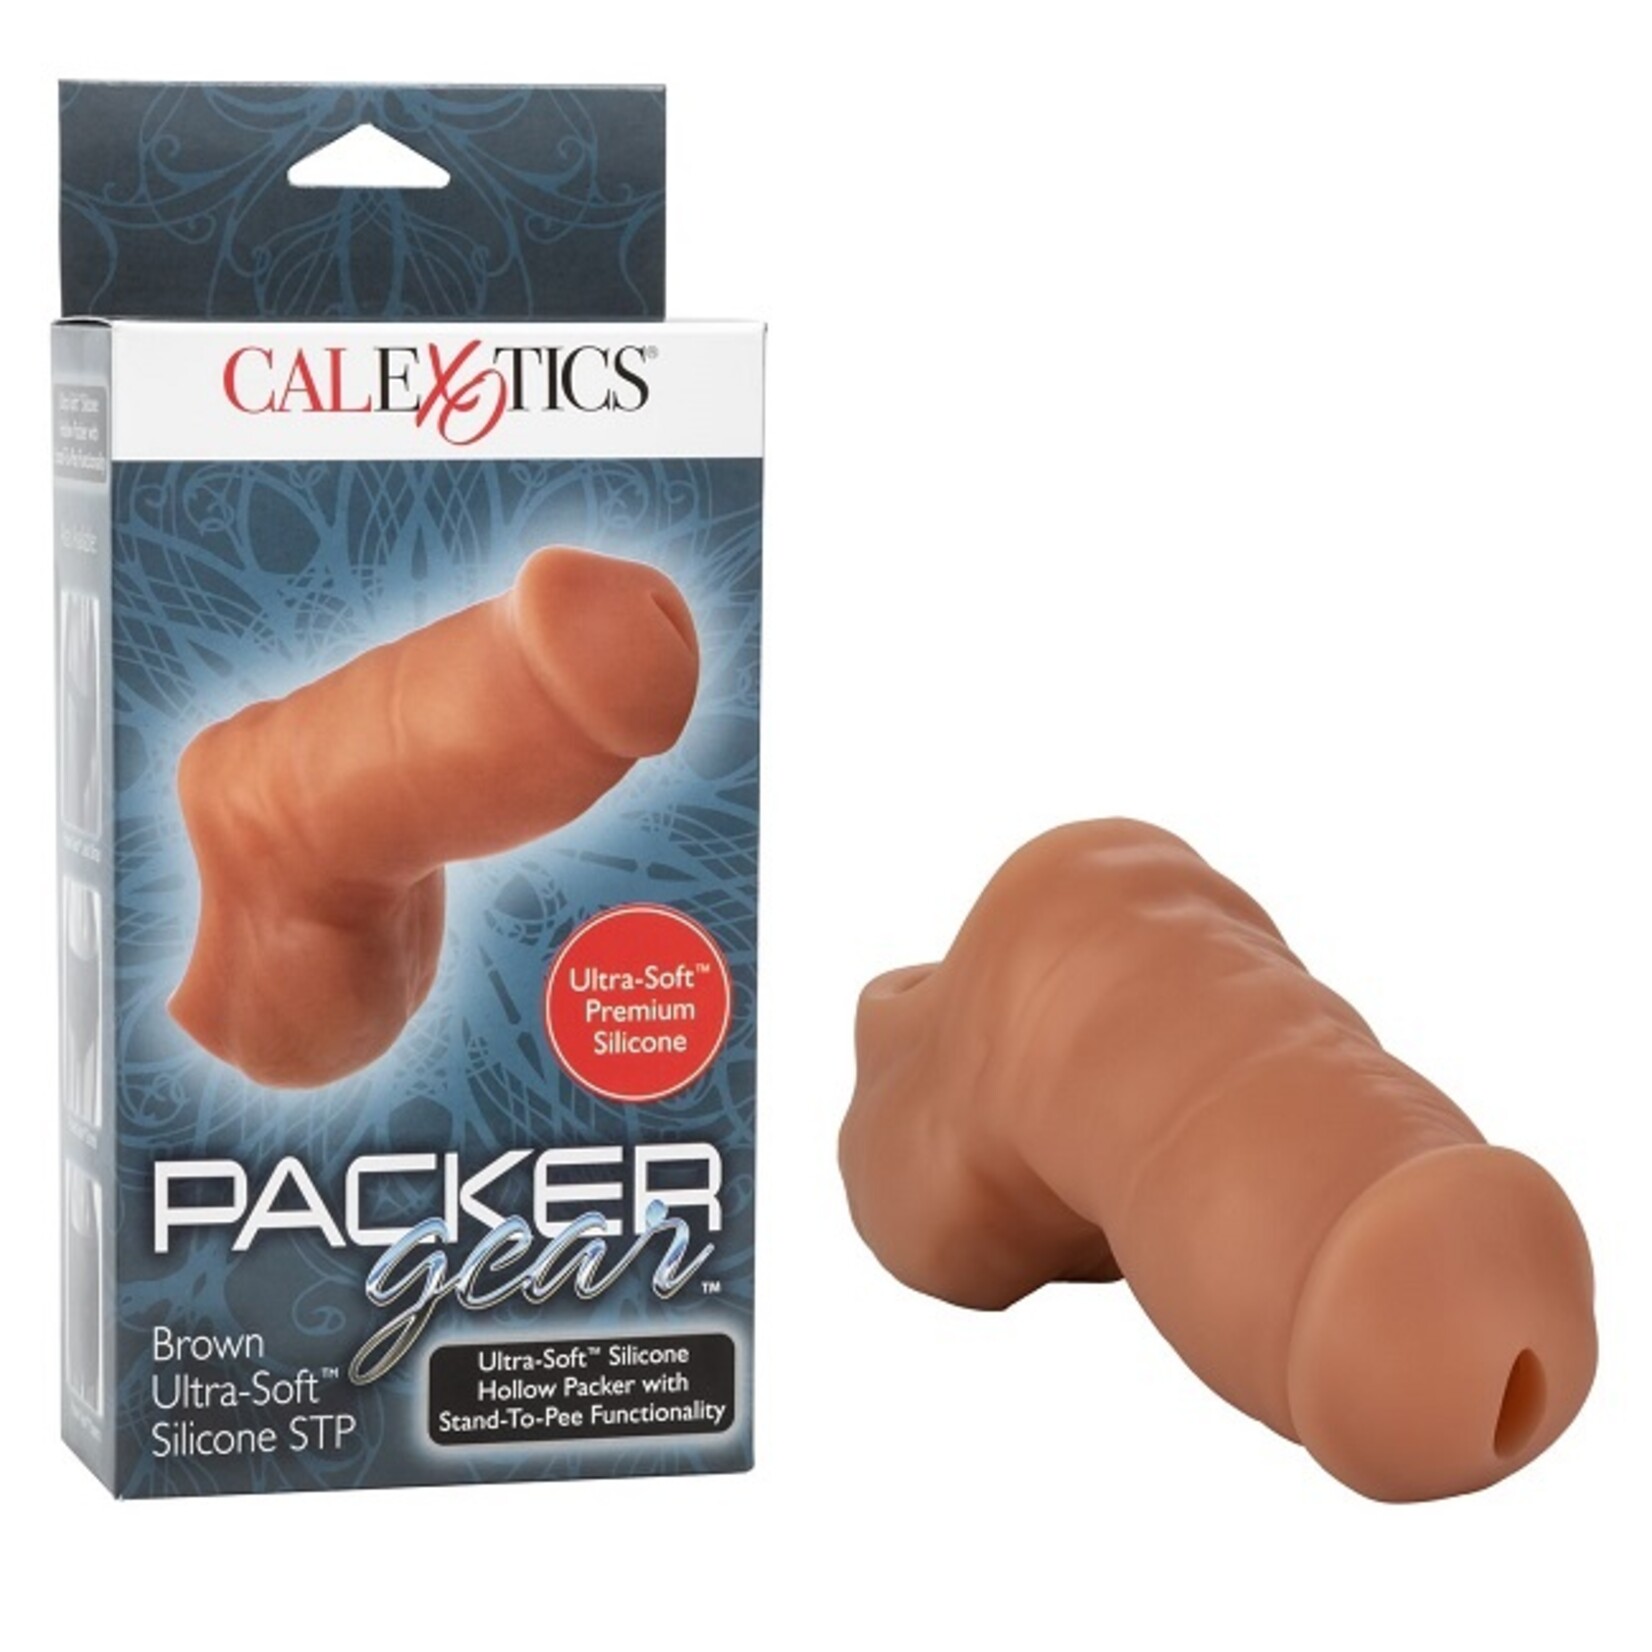 CalExotics Packer Gear Ultra-Soft Silicone STP Packer